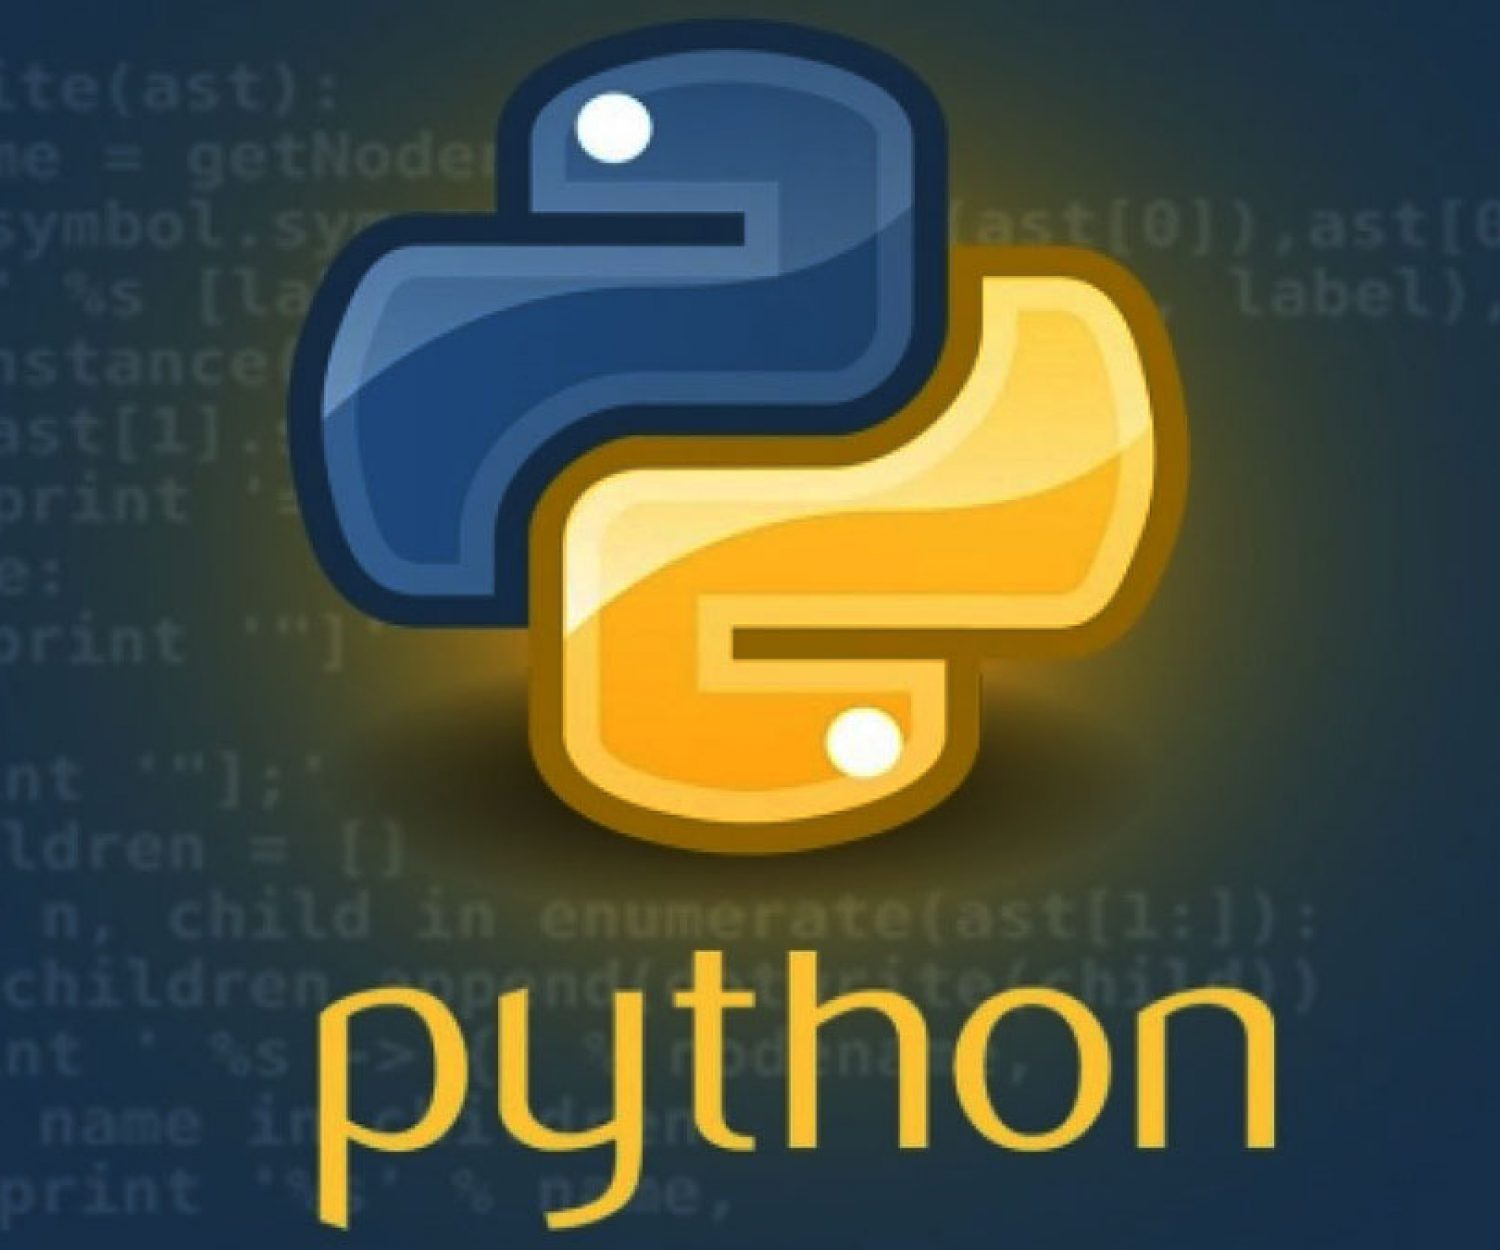 Python 3.10 12. Питон язык программирования. Пион язык программирования. Язык программирования пbajy. Питон язык программирования программа.